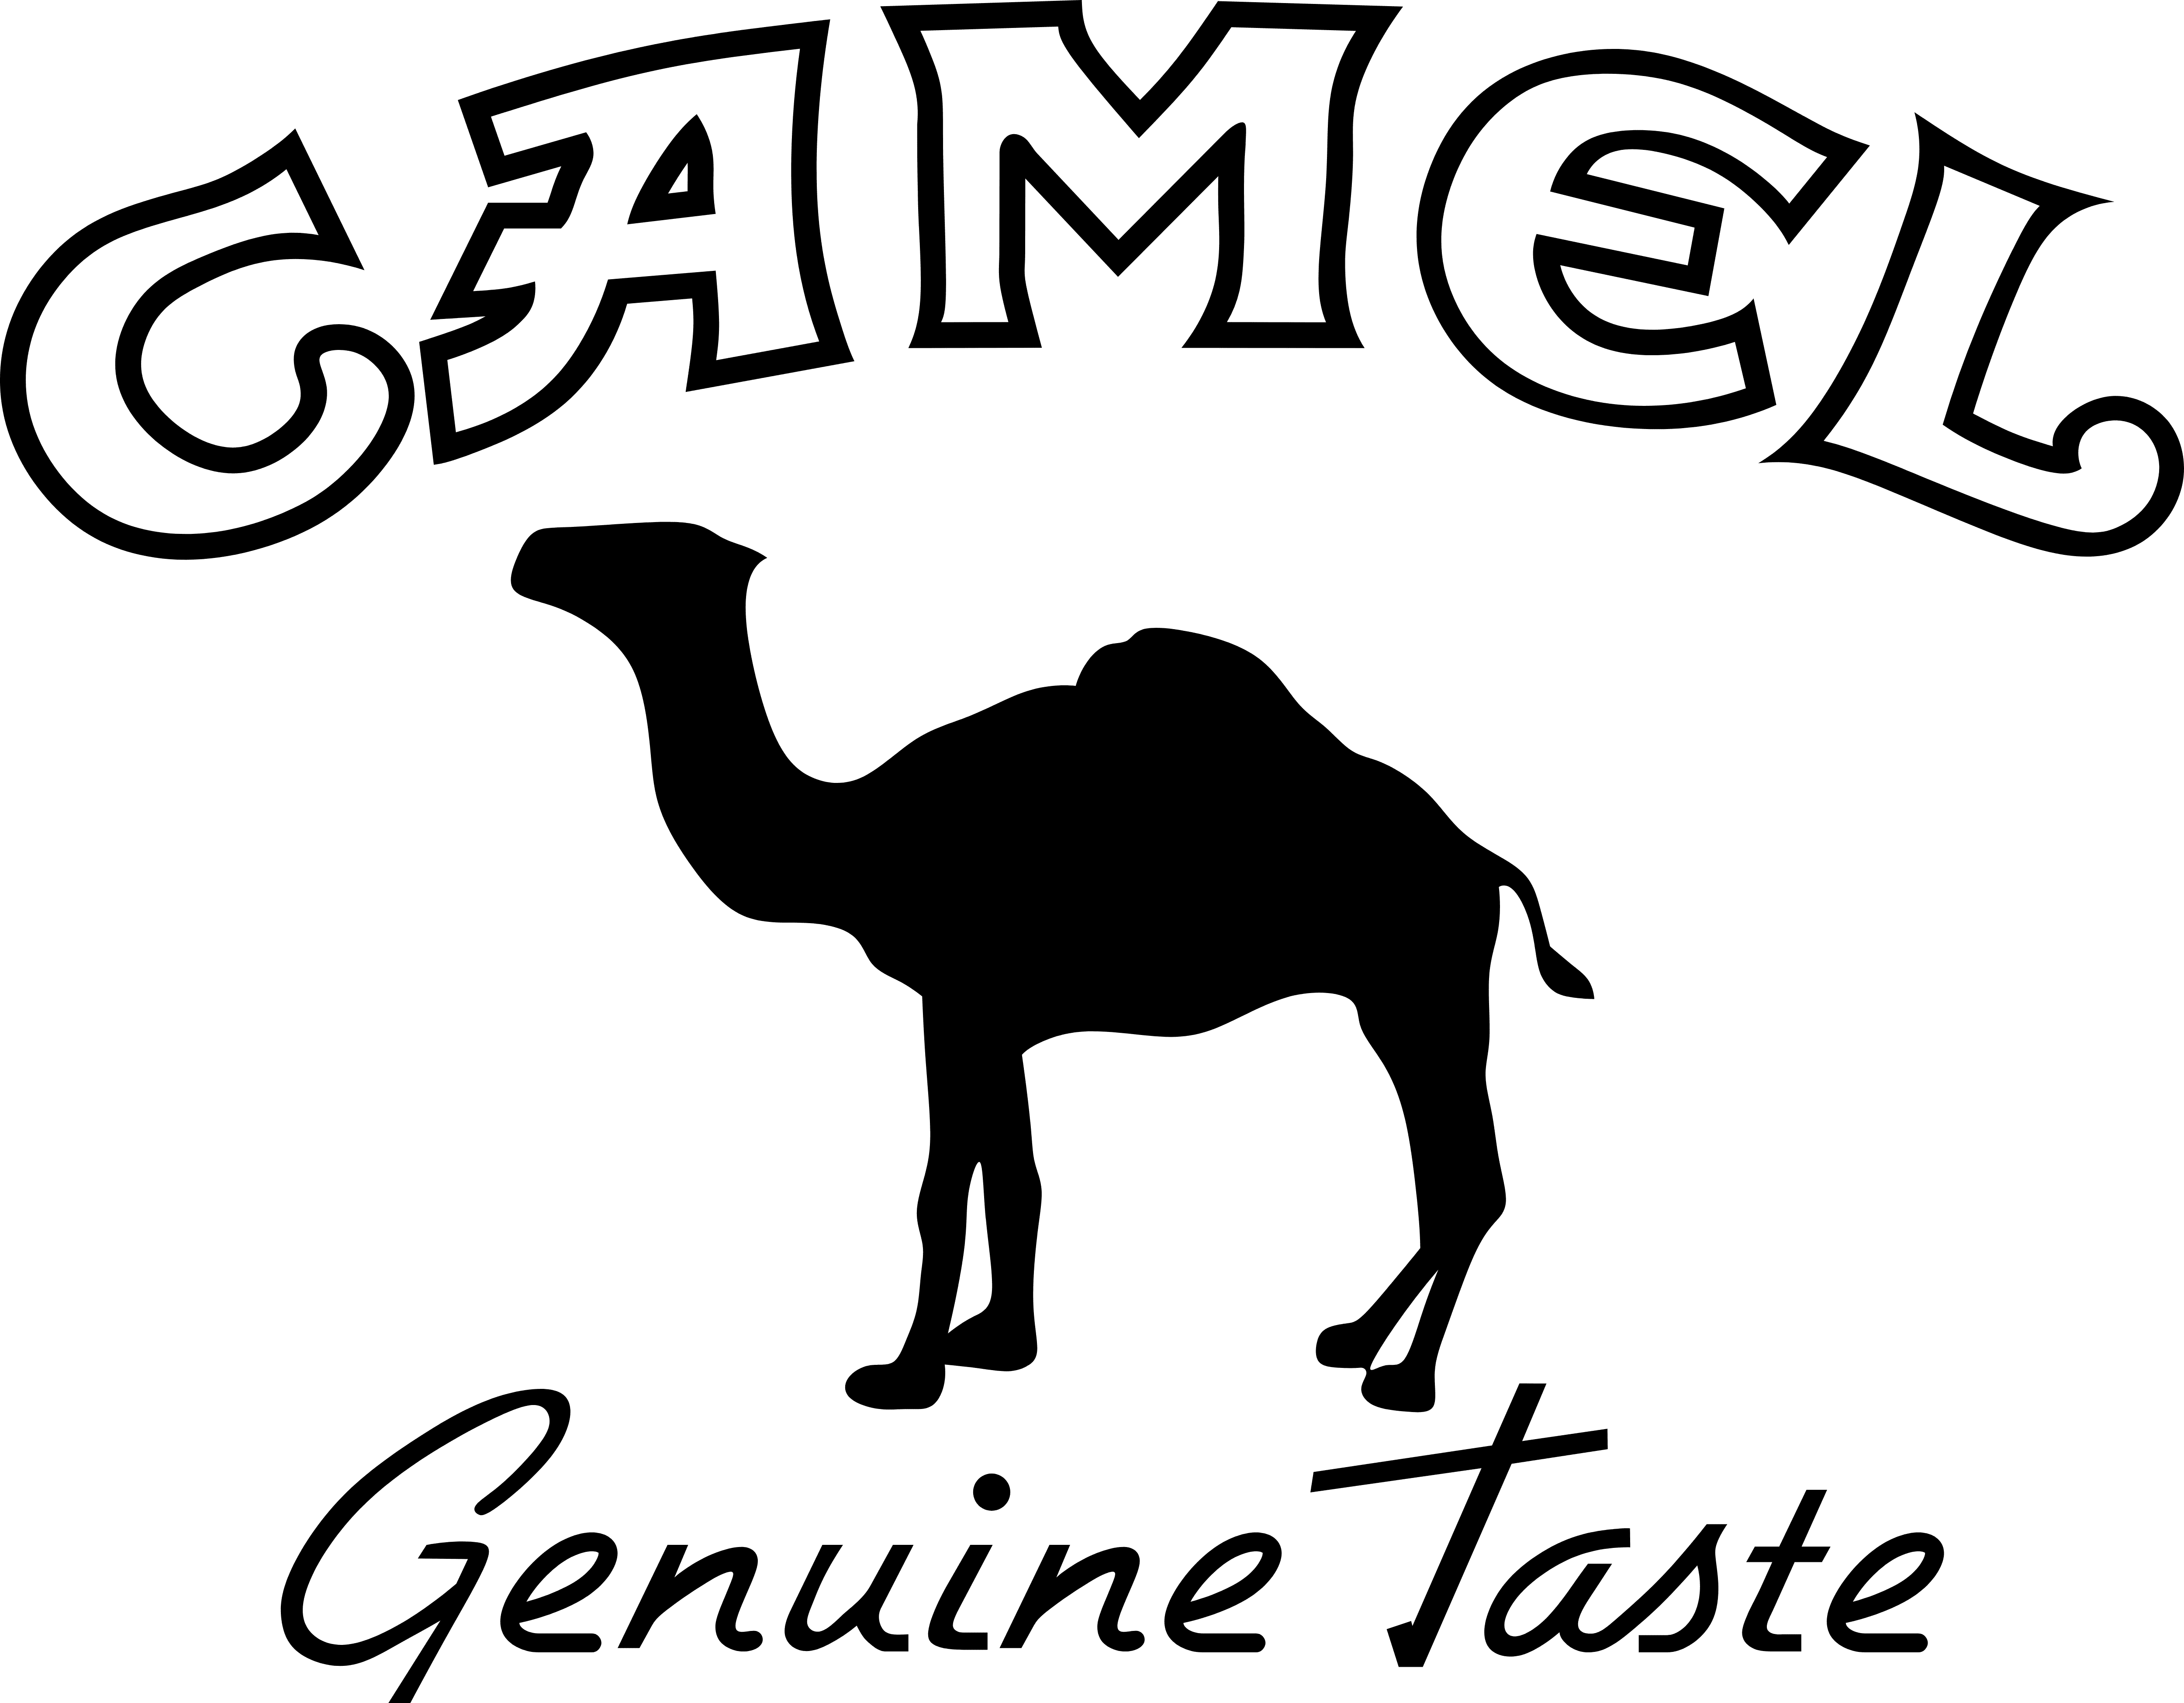 Details more than 134 camel logo best - camera.edu.vn